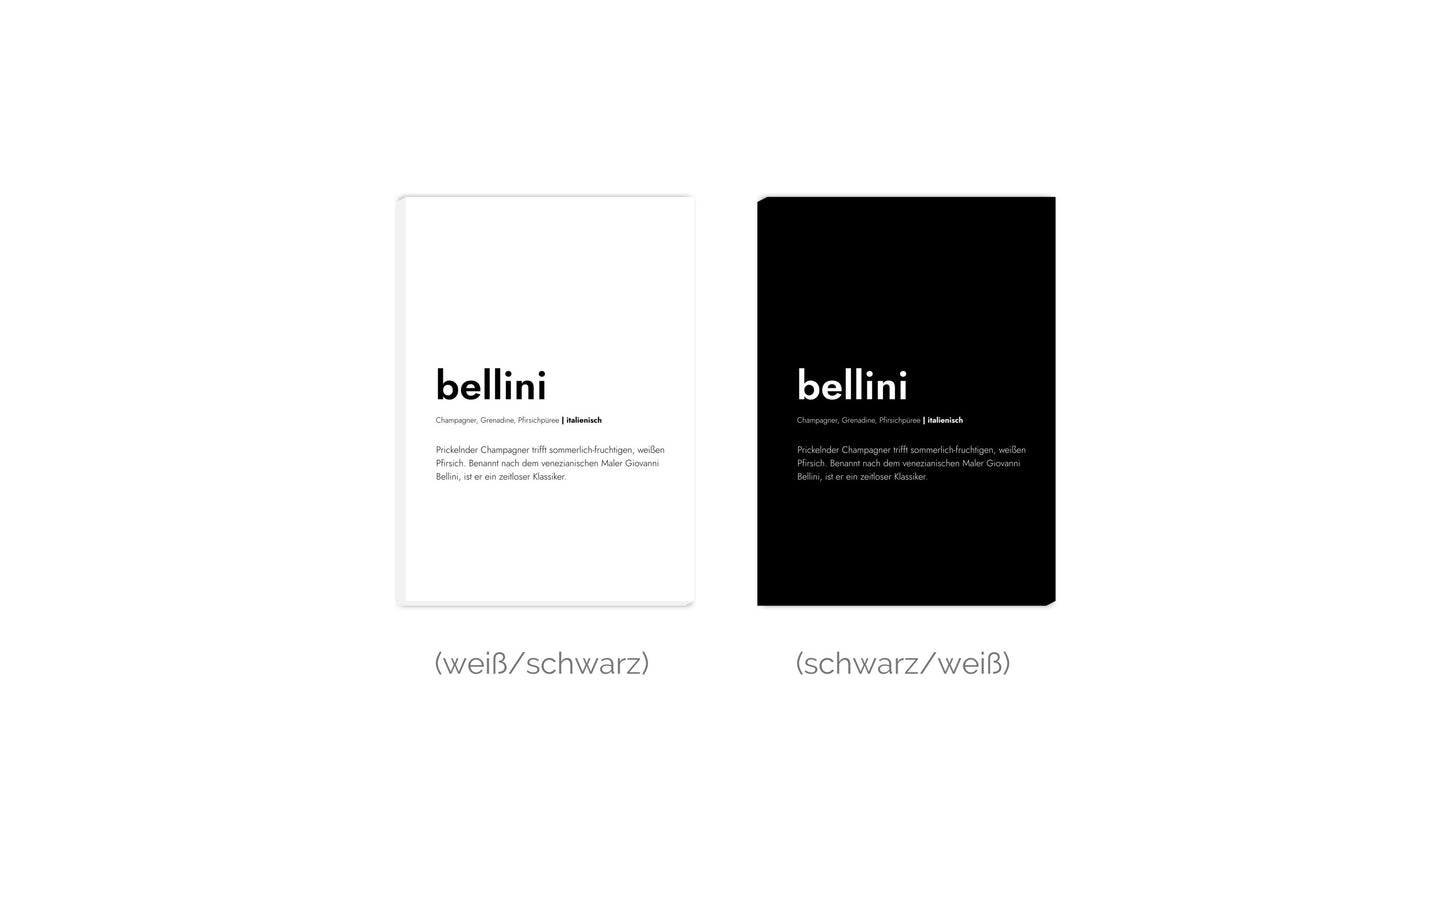 Leinwand Bellini - Definition